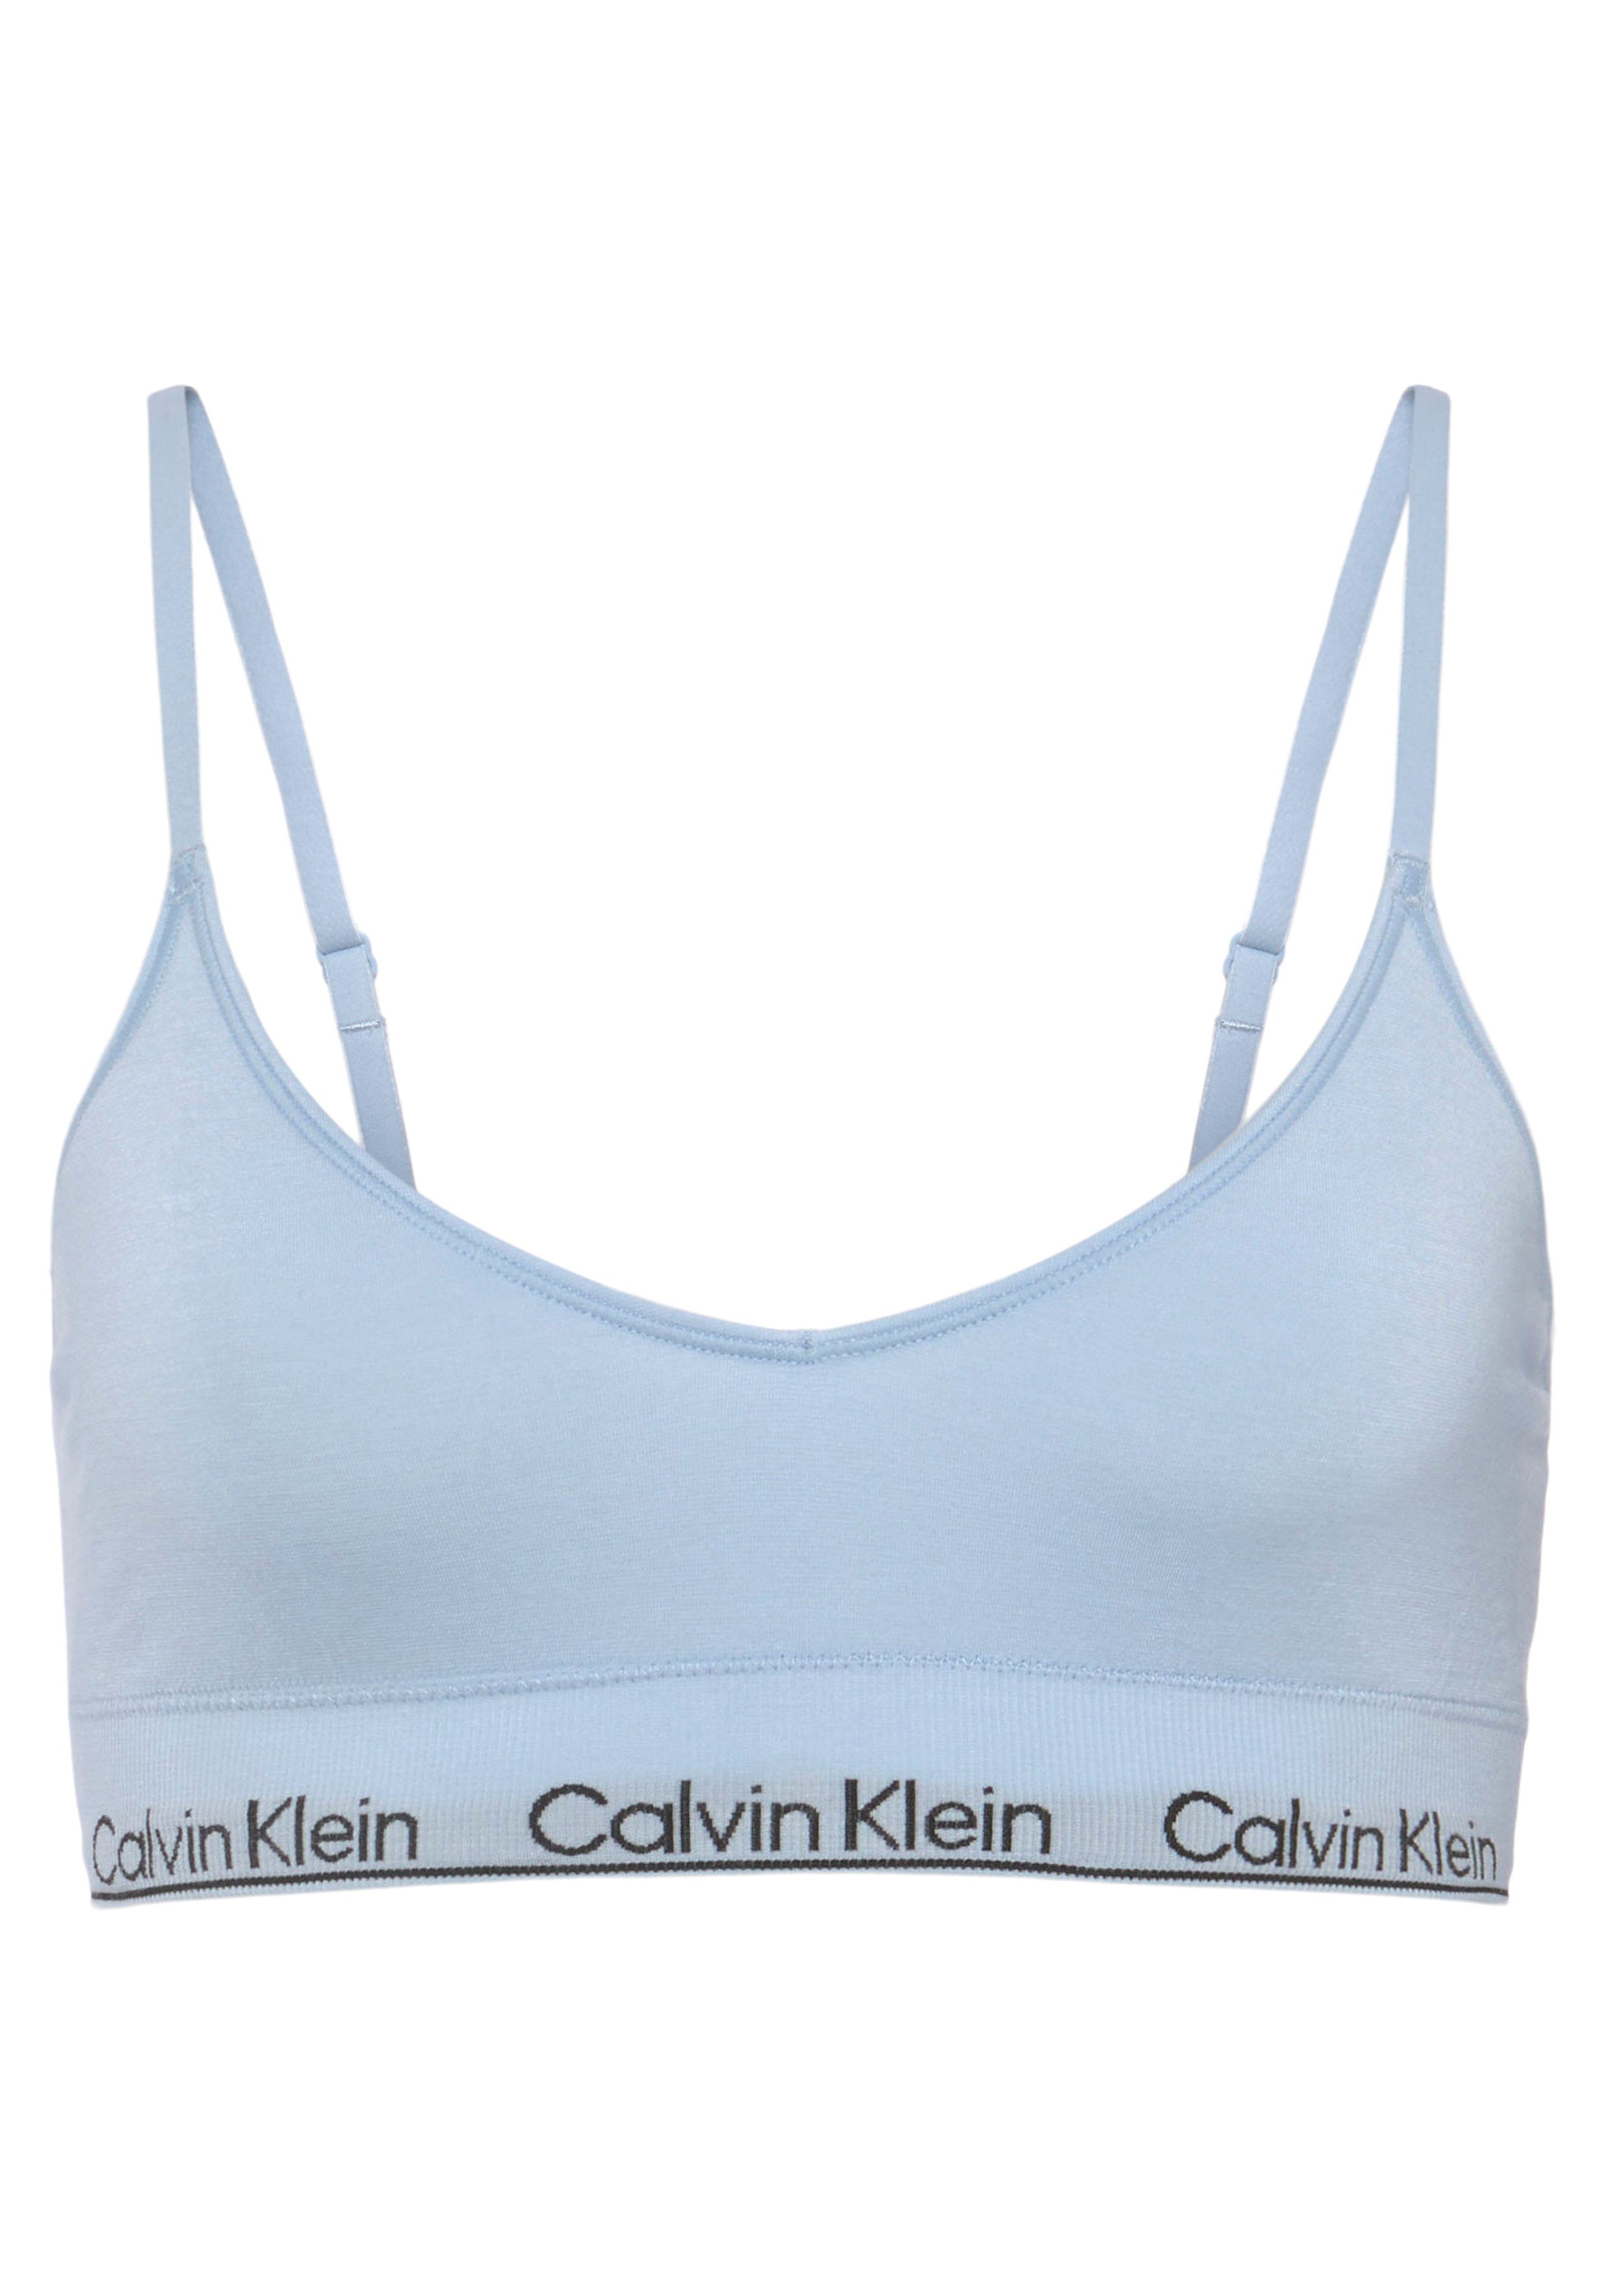 【Aufrichtigkeit】 Calvin Klein Underwear Triangel-BH LGHT mit TRIANGLE LINED CK-Logoschriftzug hellblau